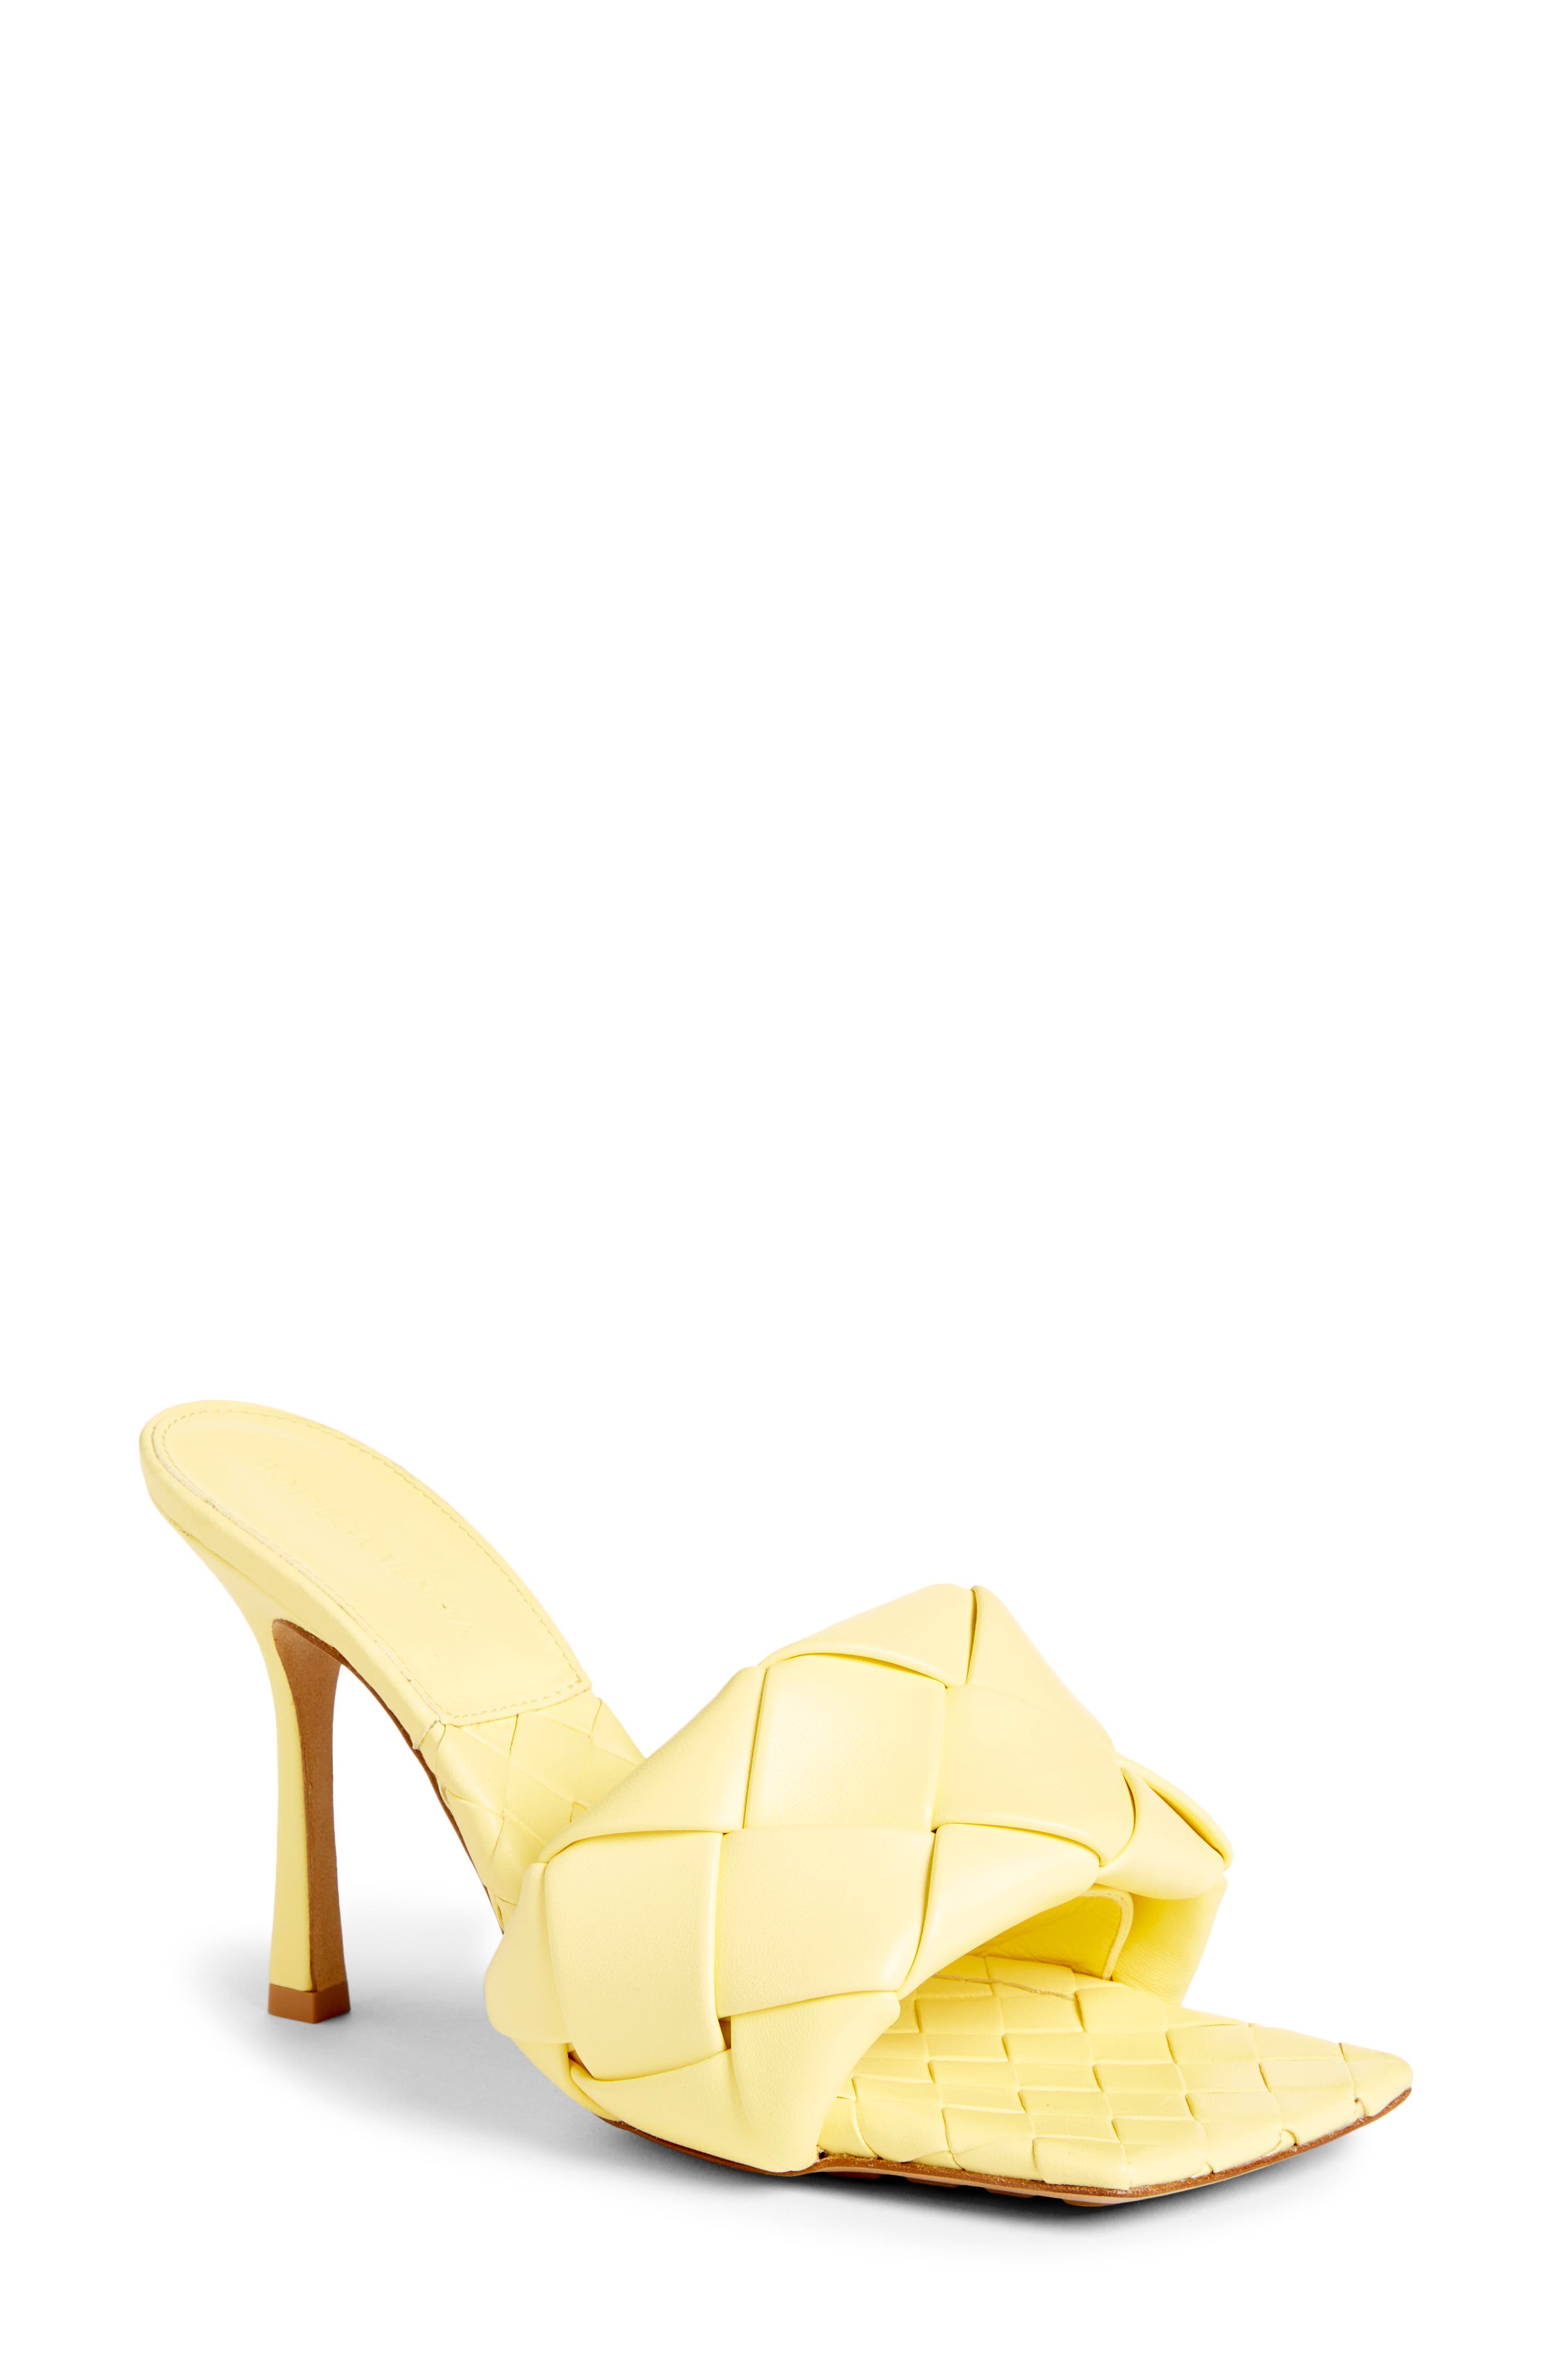 yellow heels size 12